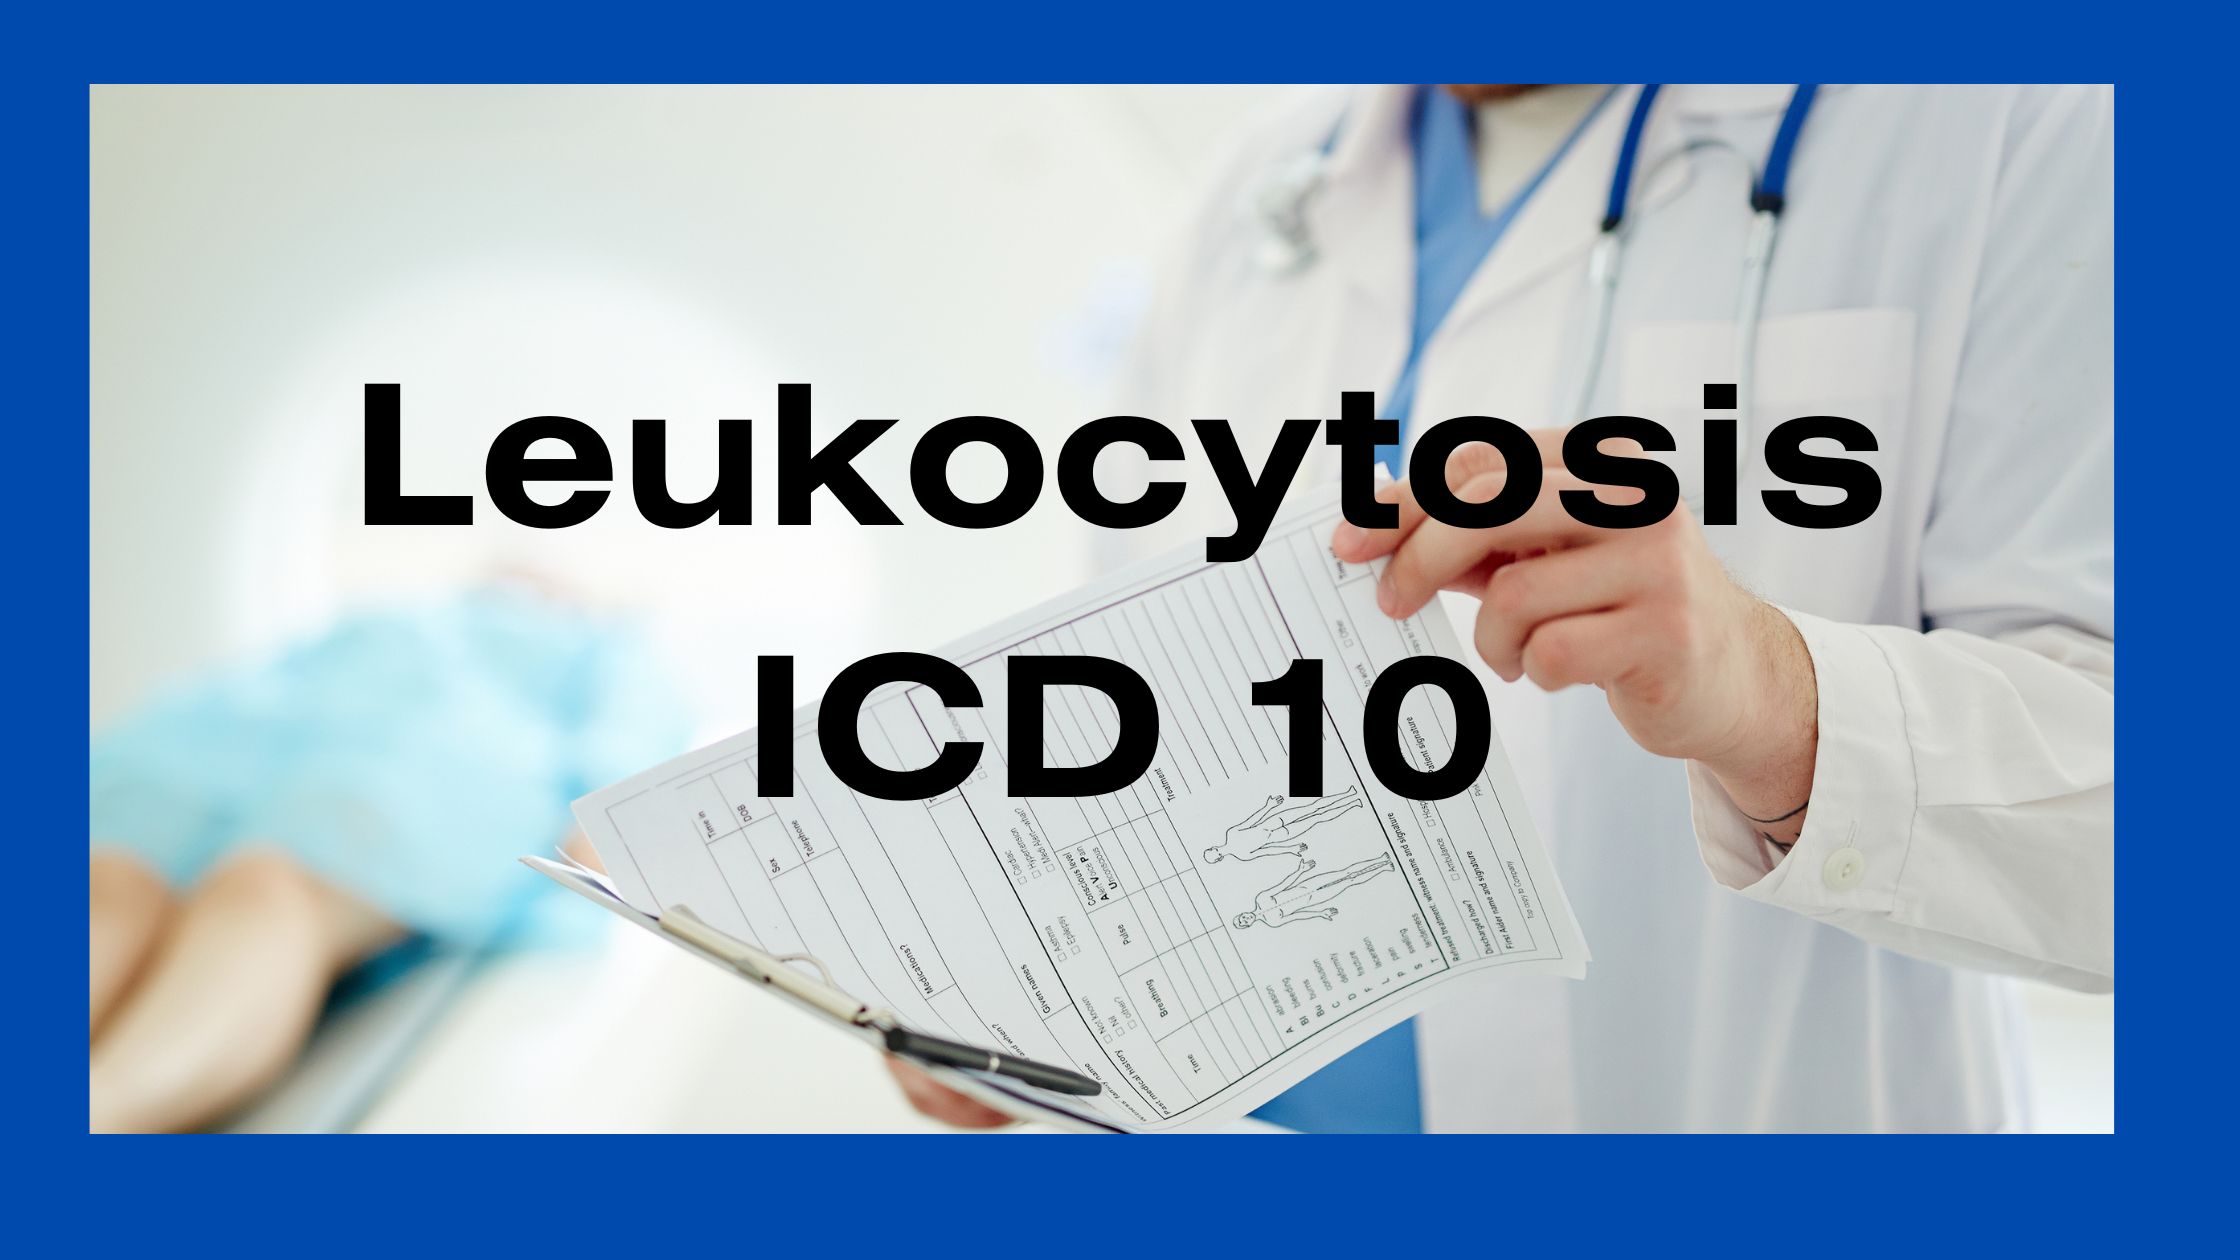 Leukocytosis ICD 10 codes